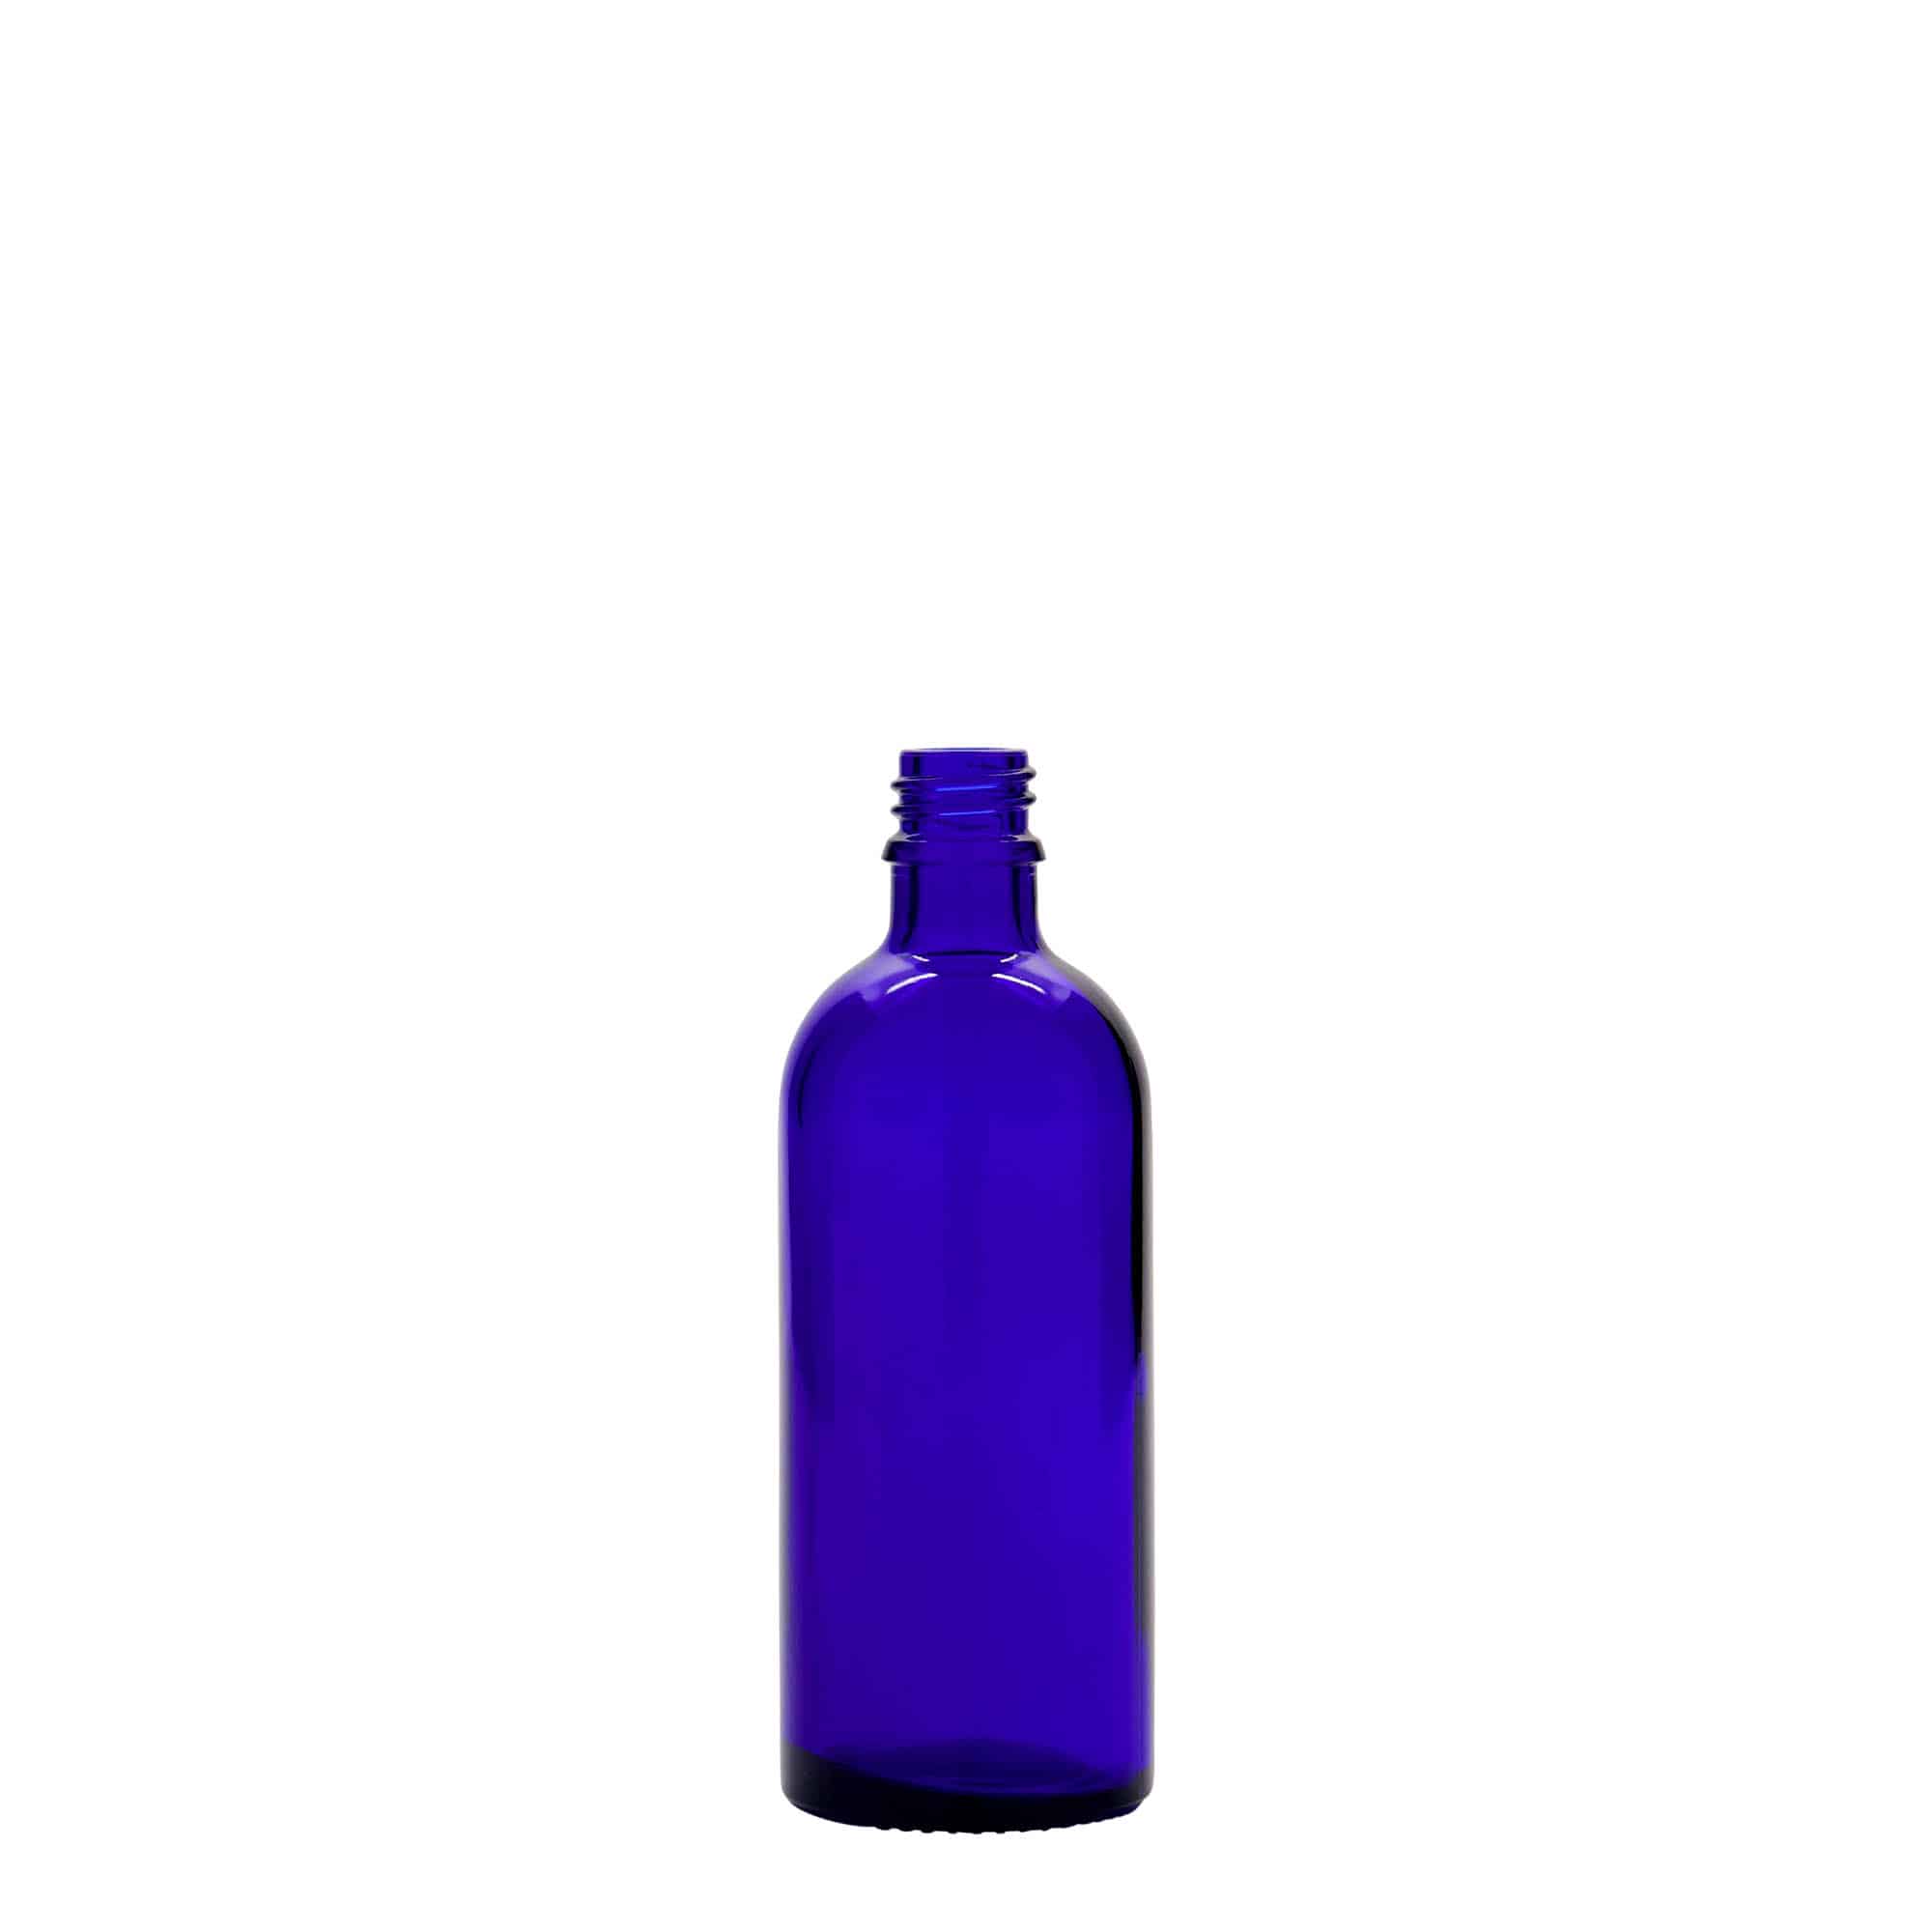 100 ml Flacone farmaceutico, vetro, blu reale, imboccatura: DIN 18